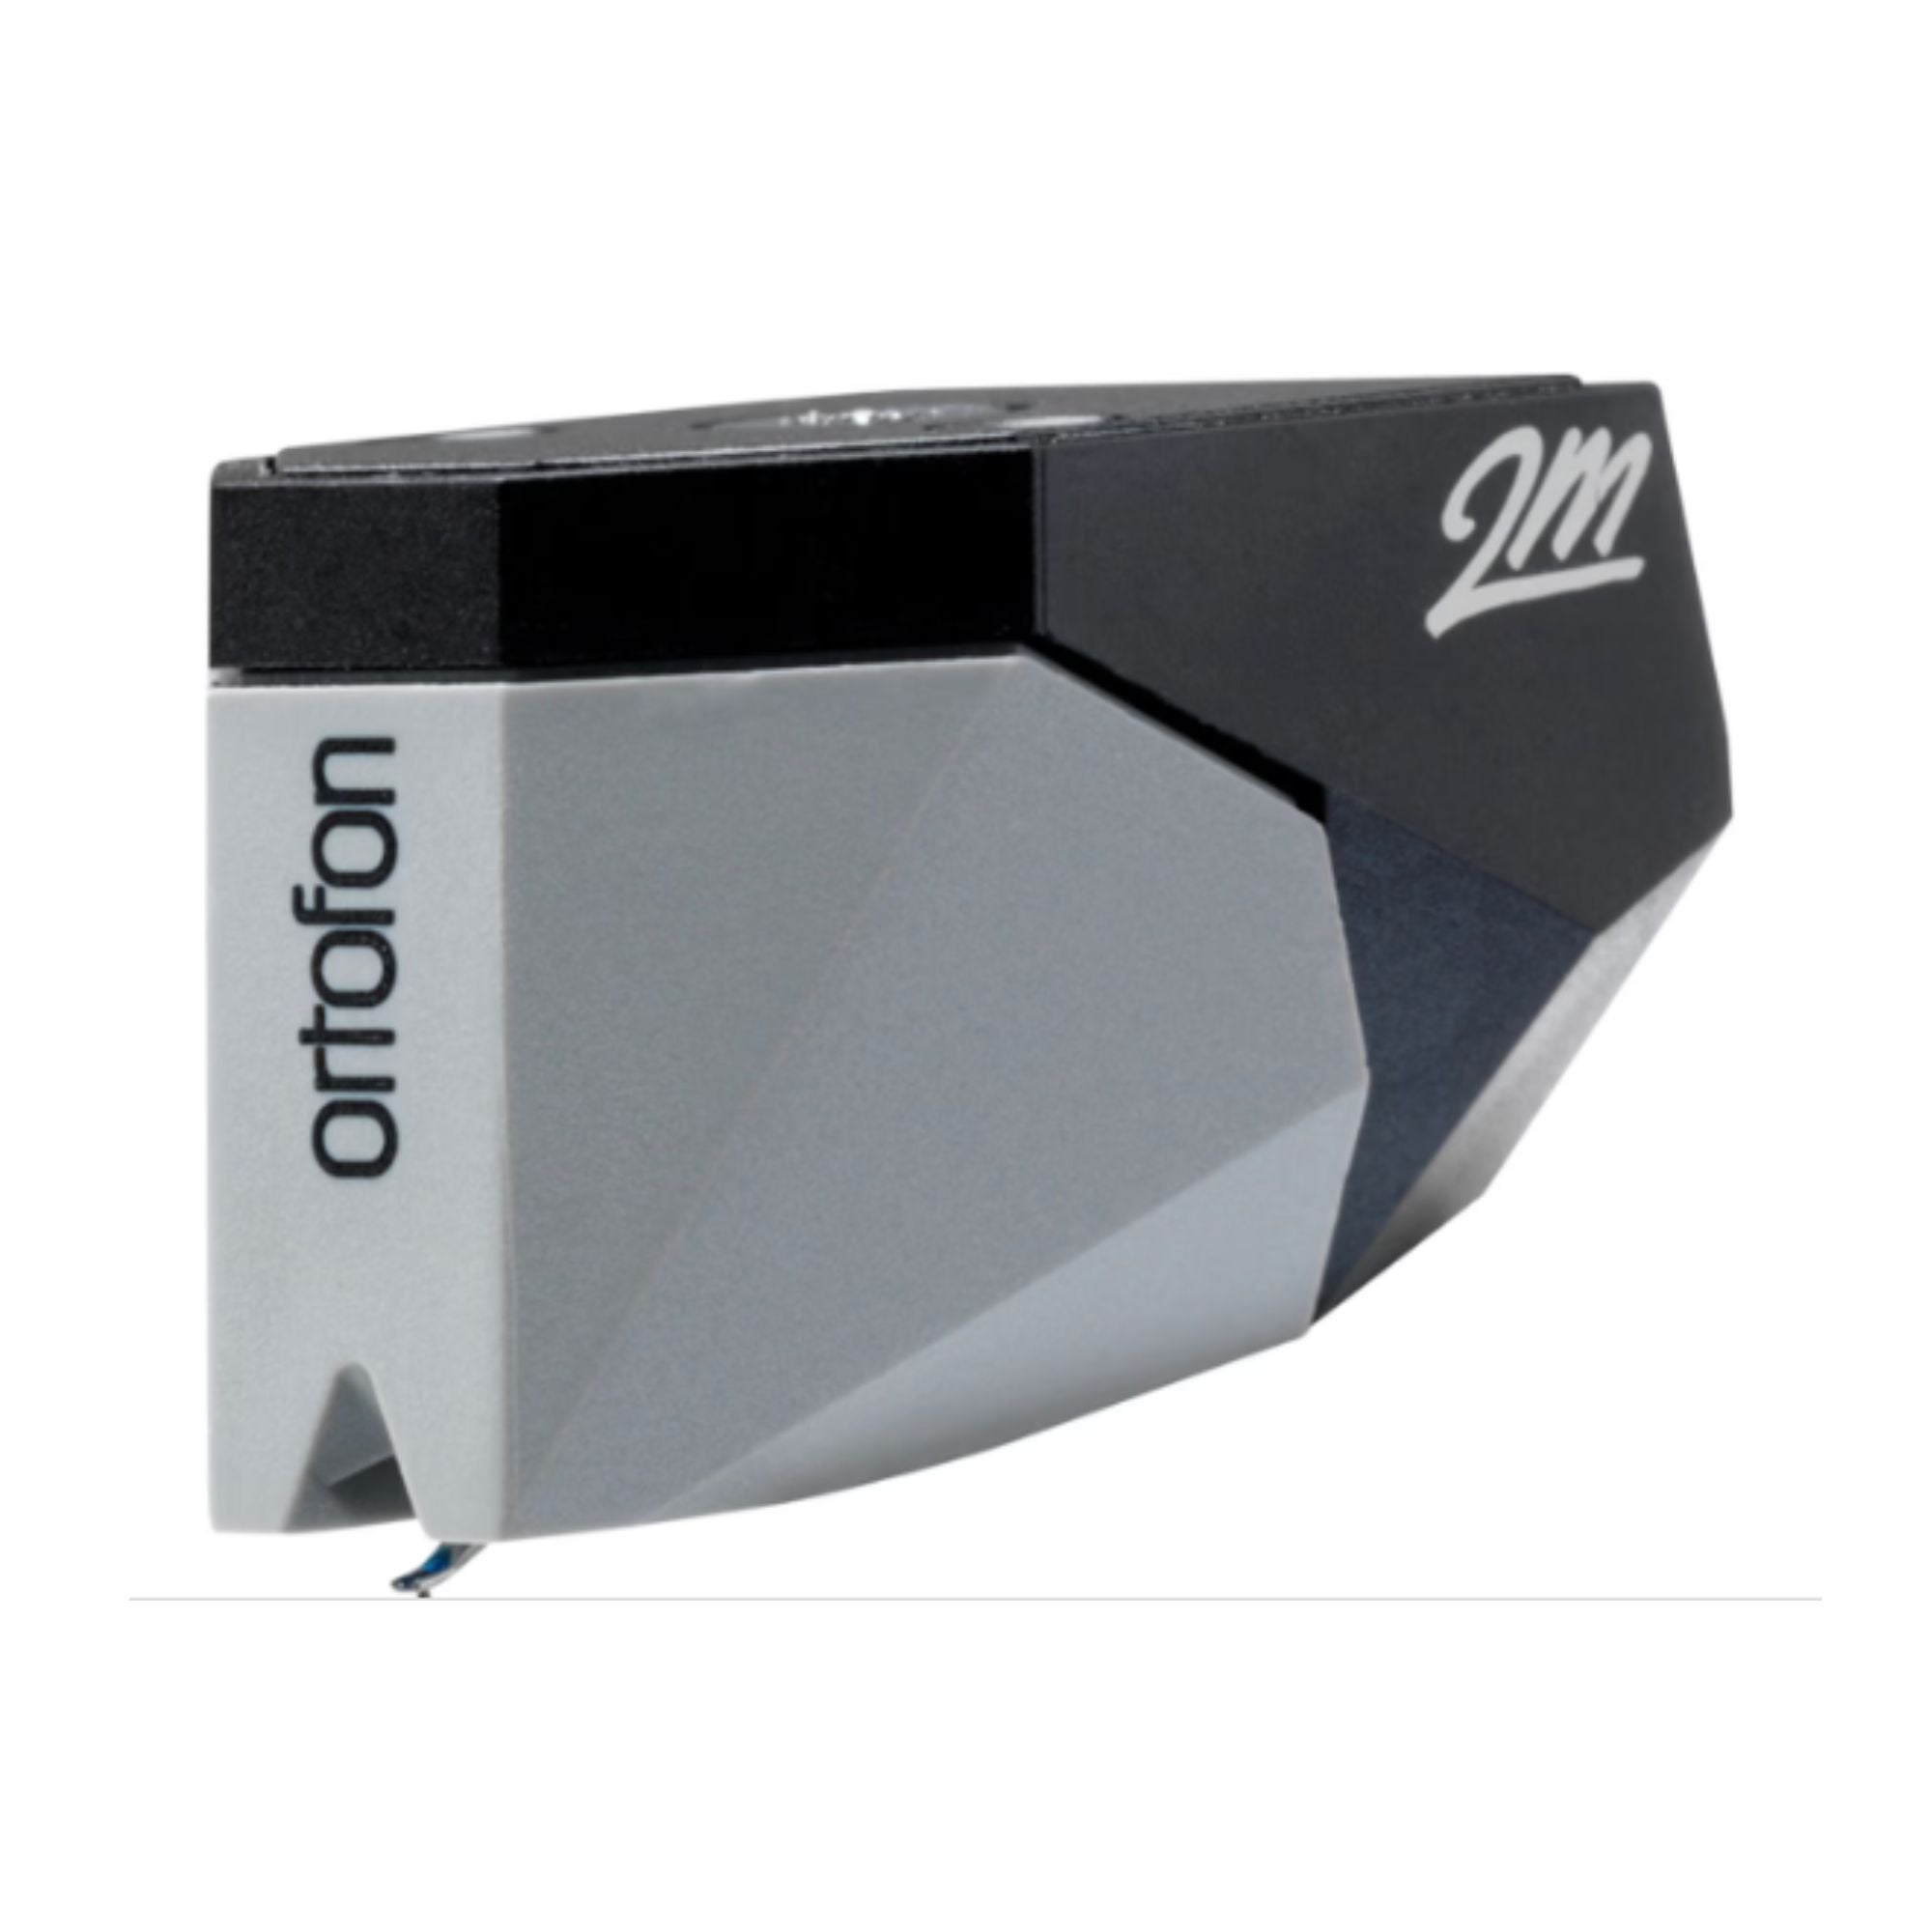 Ortofon 2M 78 - True Mono Moving Magnet Cartridge, Ortofon, Turntable Accessories - AVStore.in